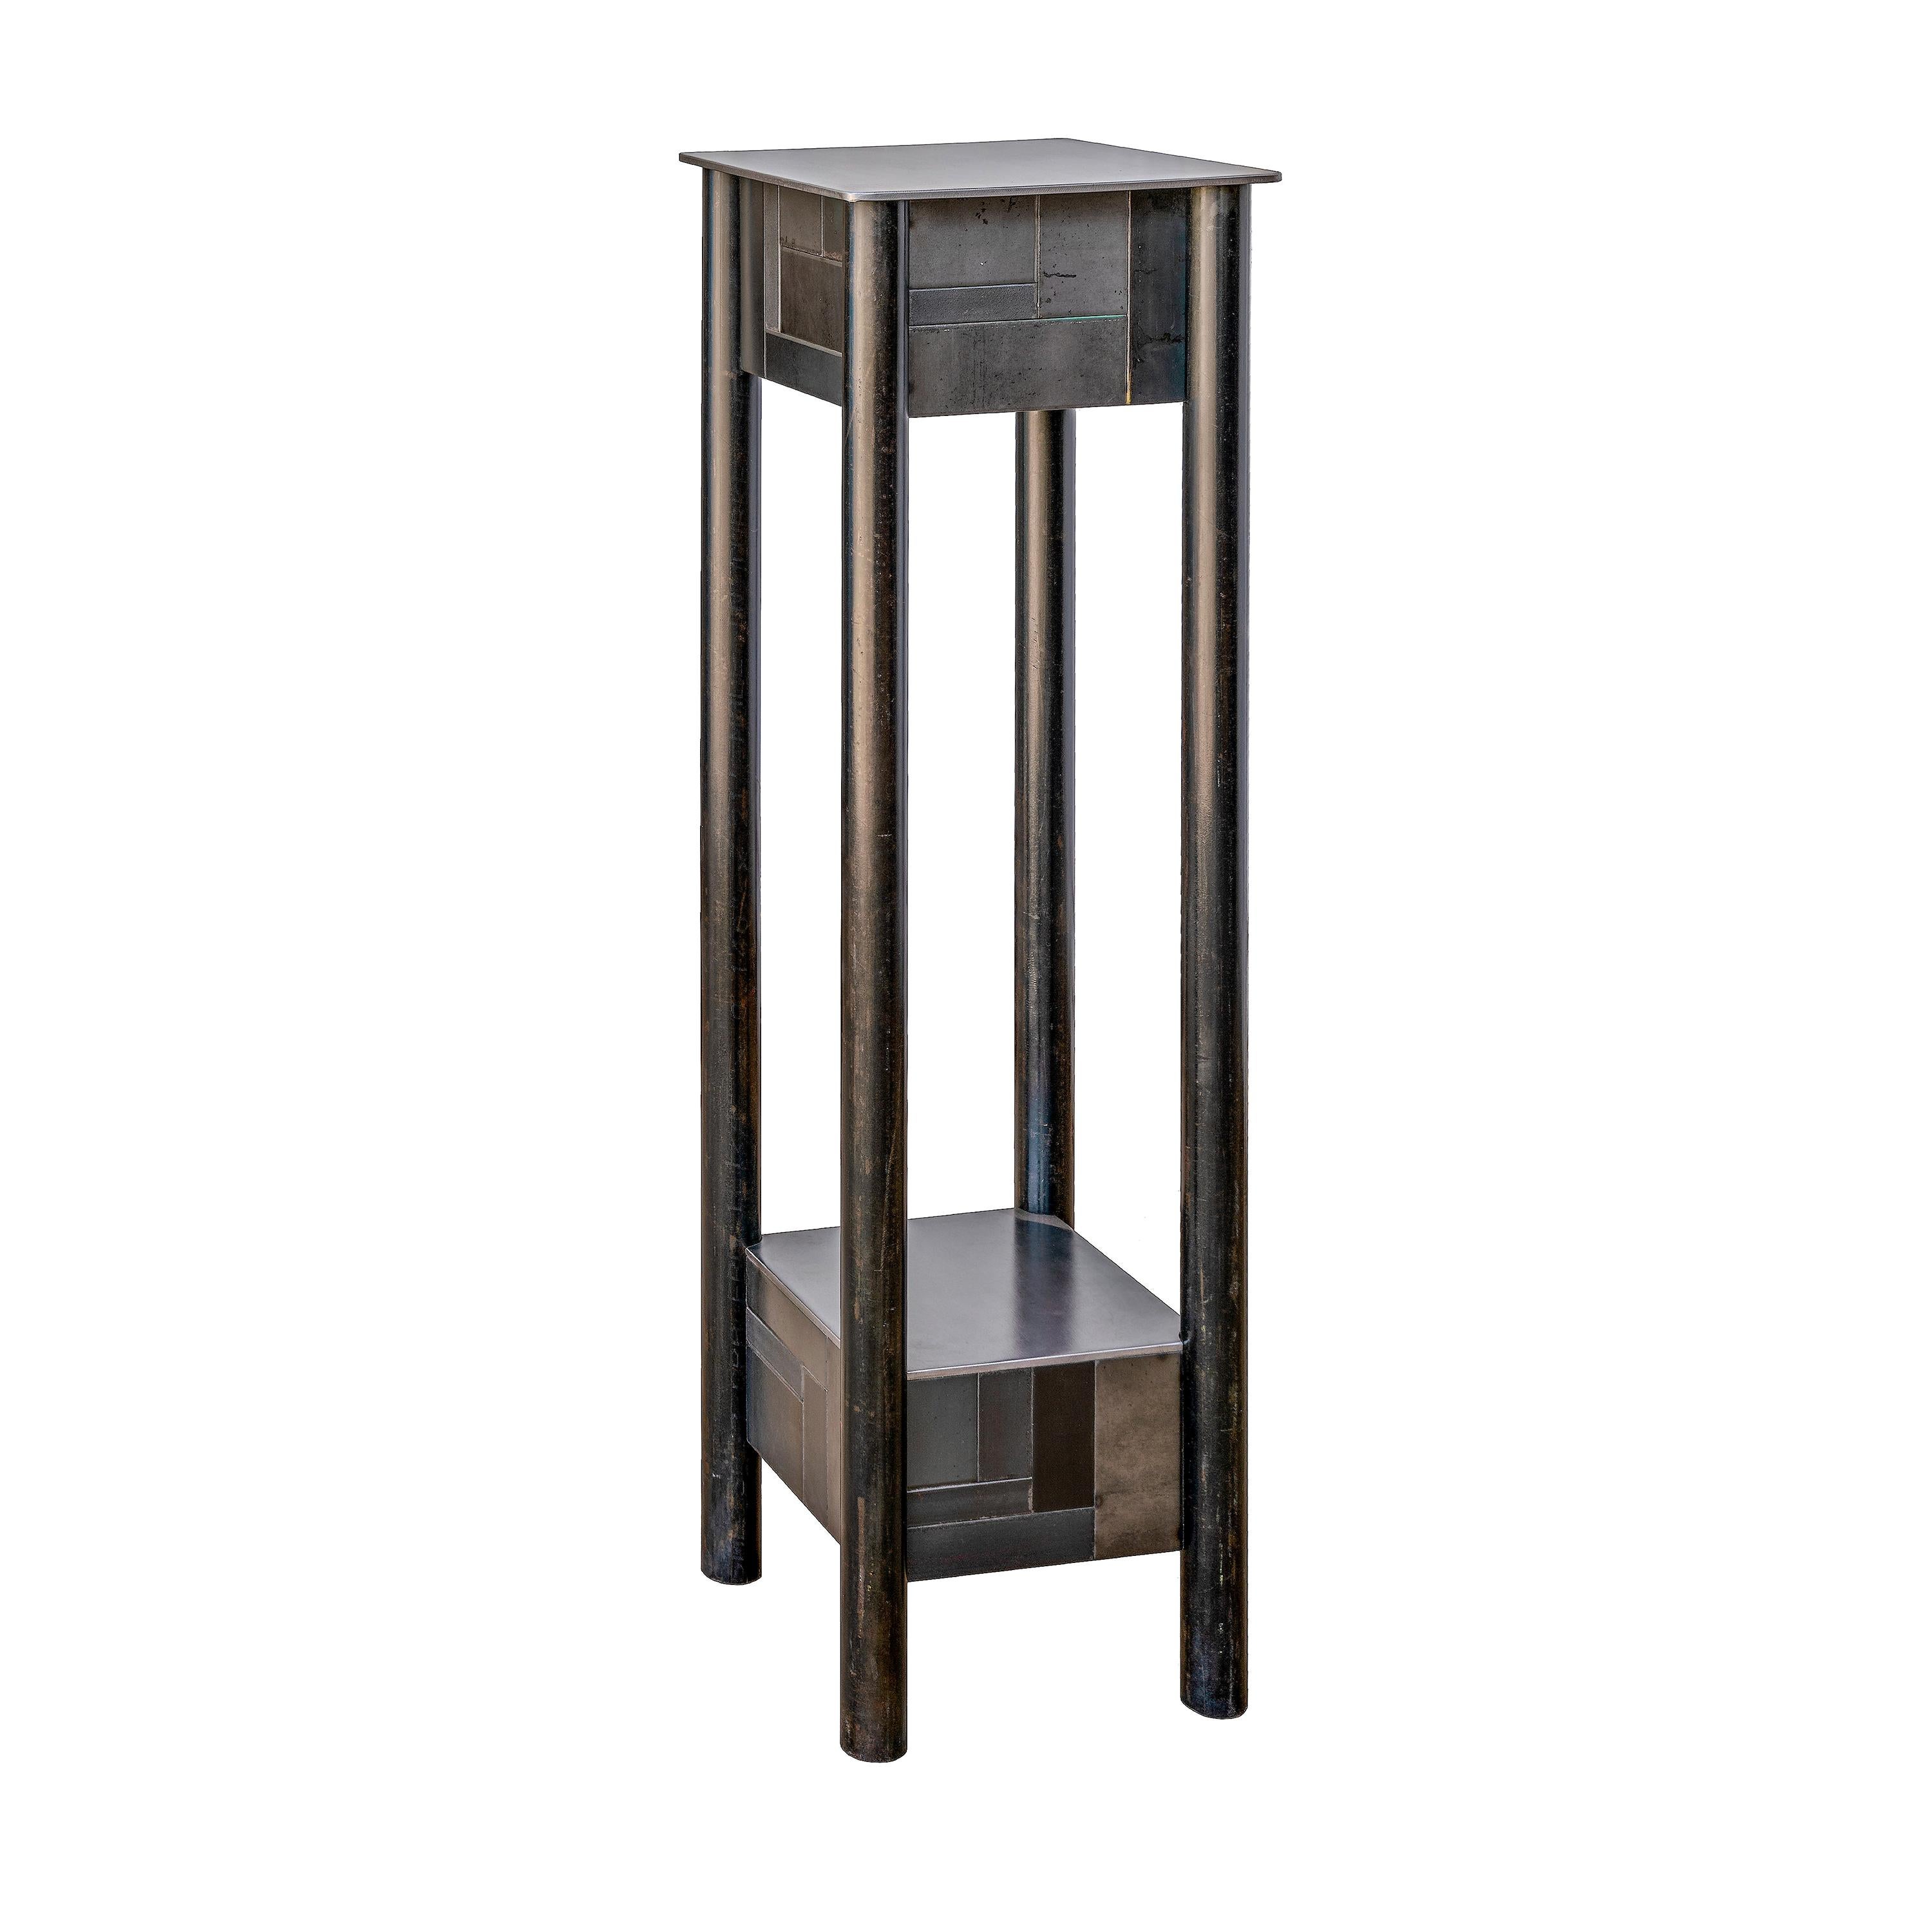 Jim Rose Steel Pedestal, Welded Steel with Shelf, Monochromatic Quilt Pattern